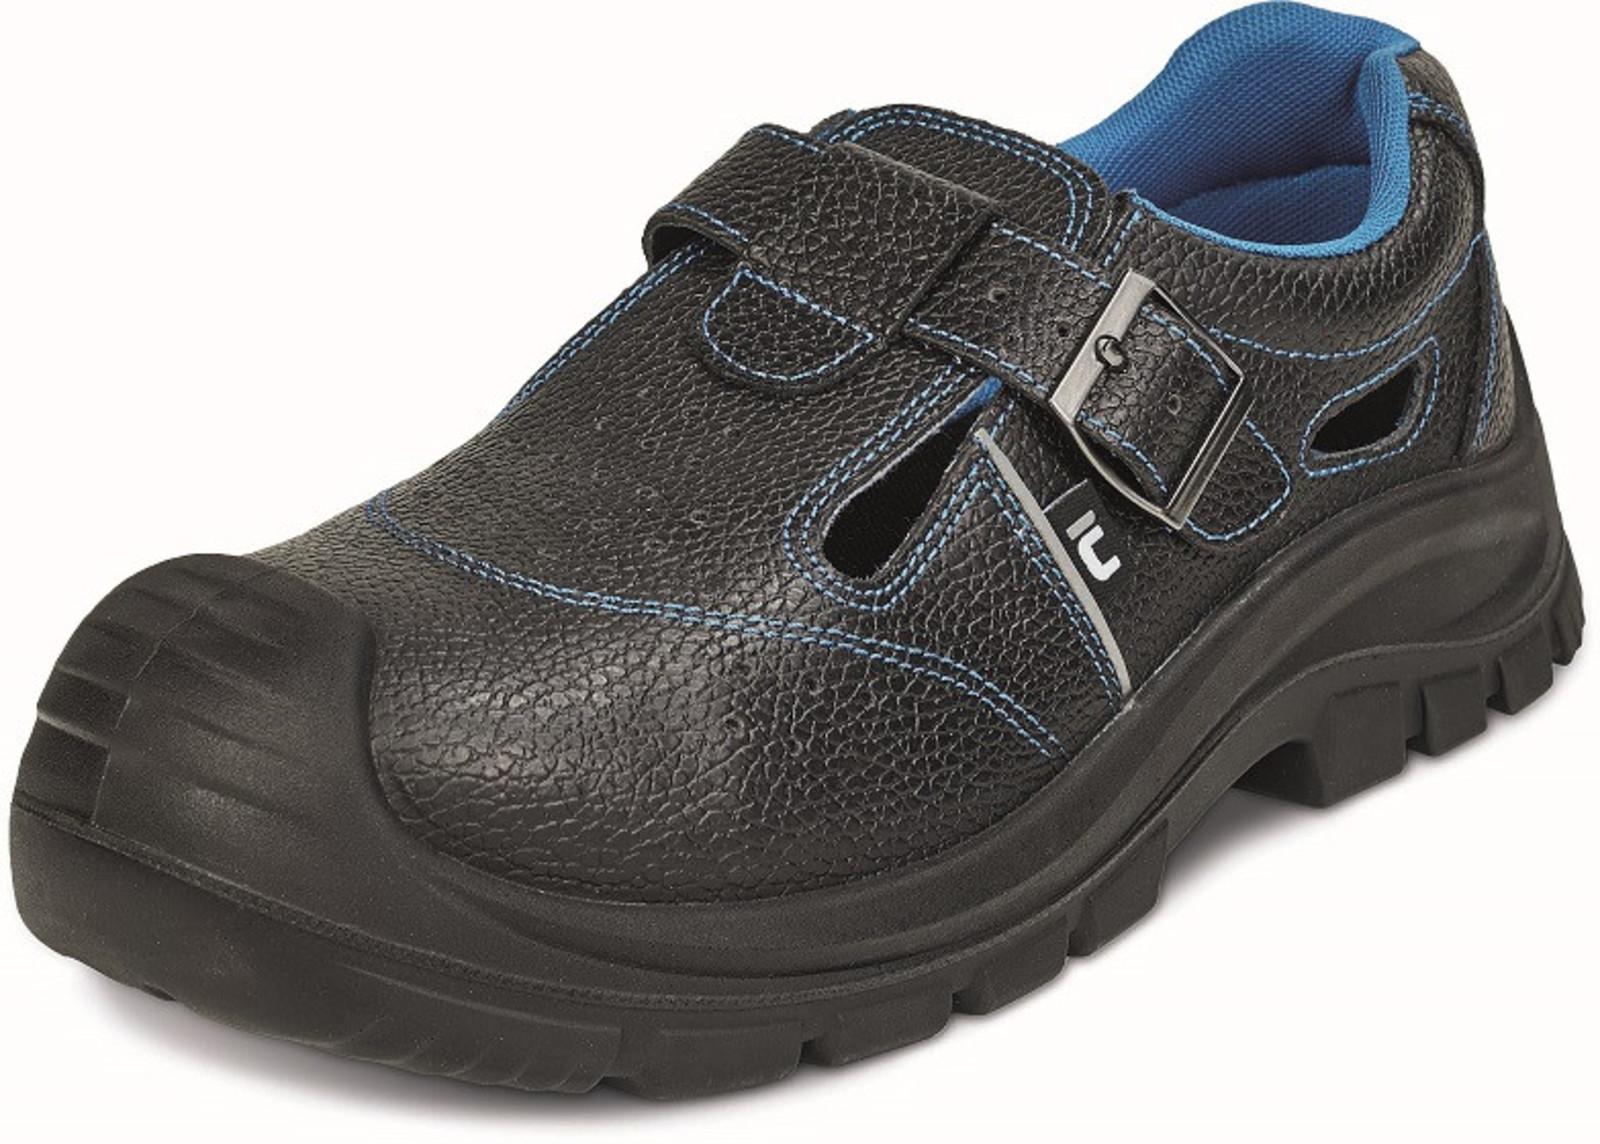 Bezpečnostné sandále Raven XT S1 SRC - veľkosť: 38, farba: čierna